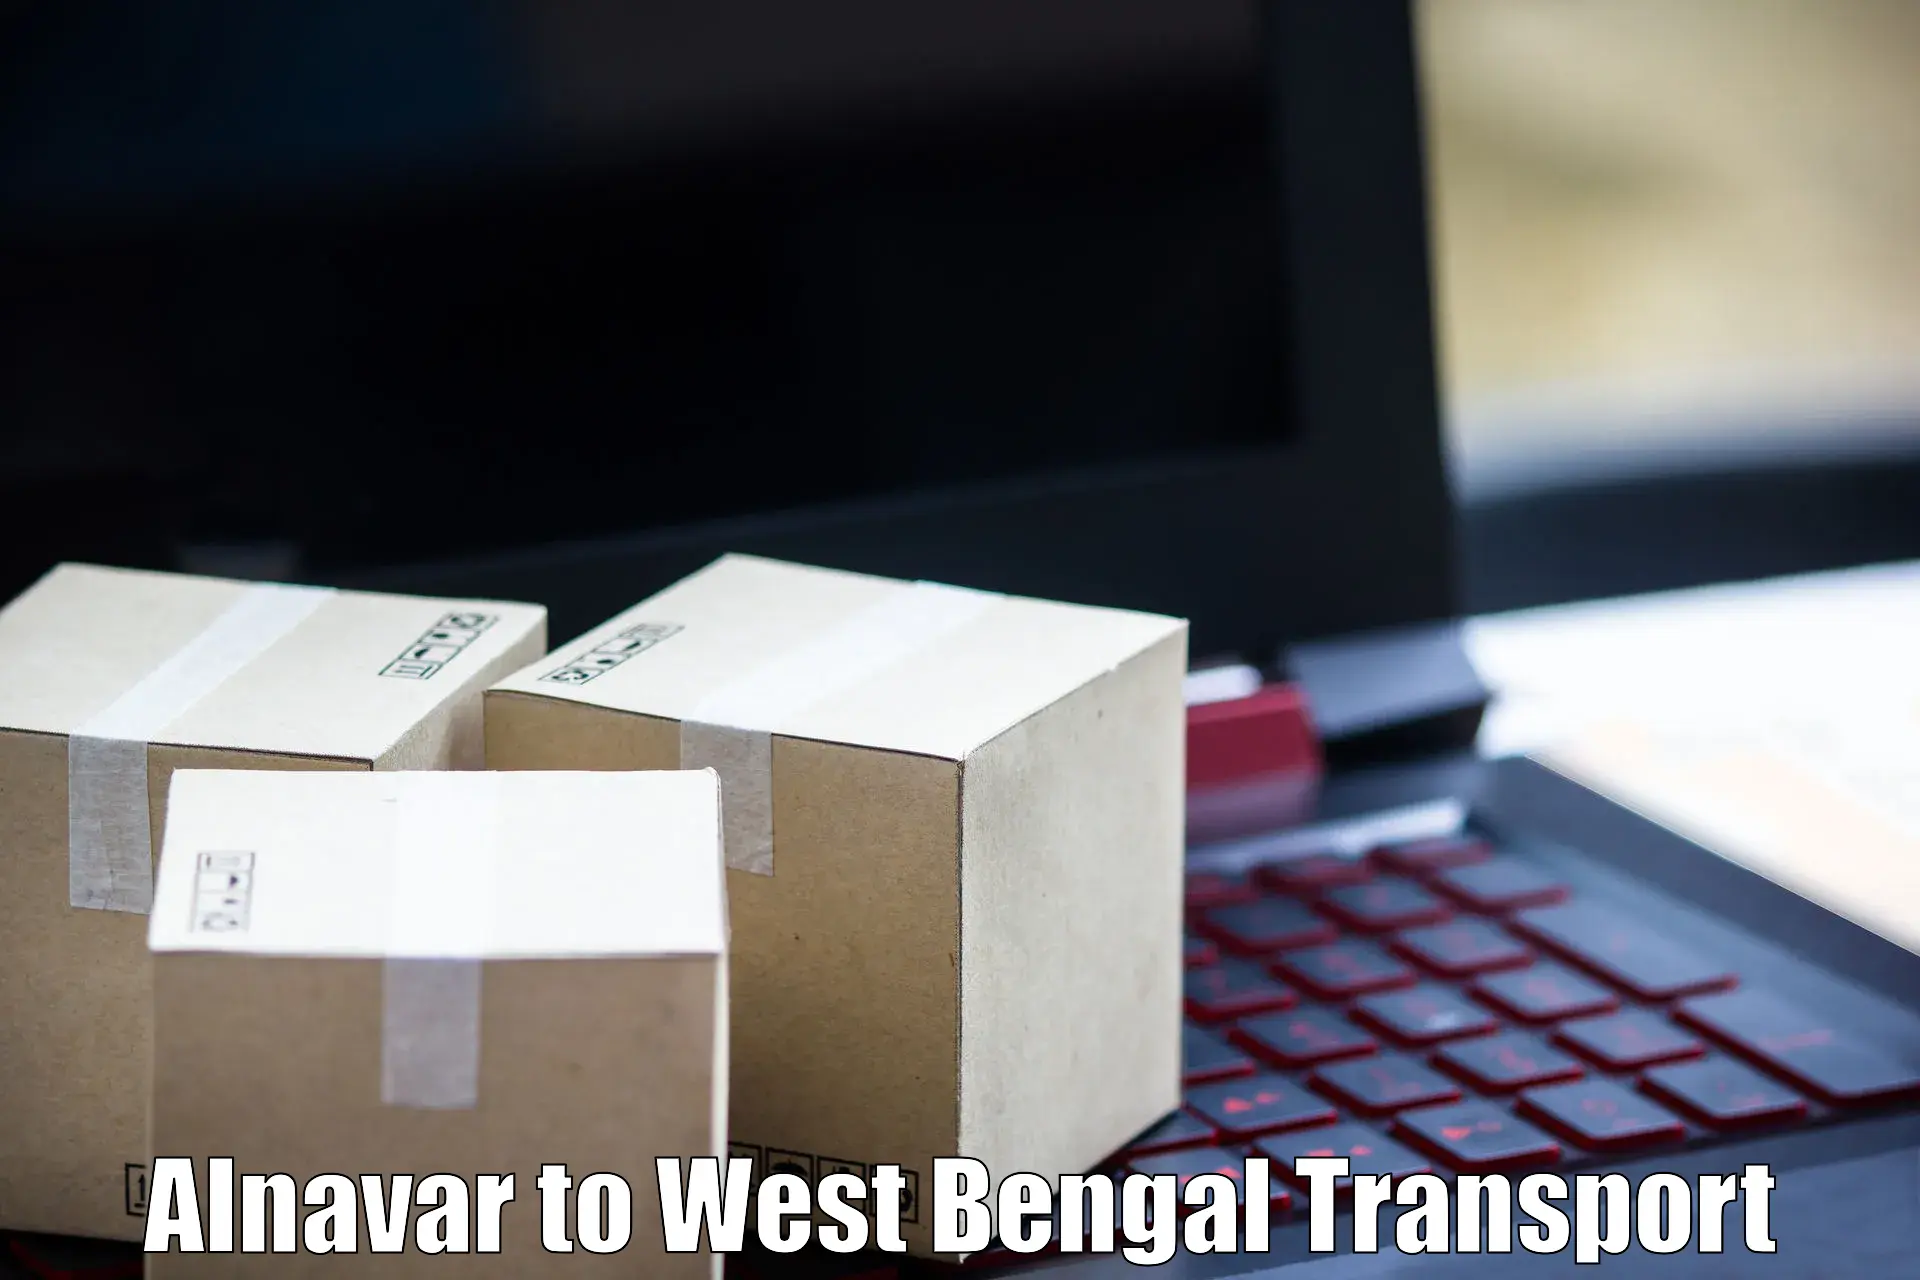 Nearby transport service Alnavar to Burdwan